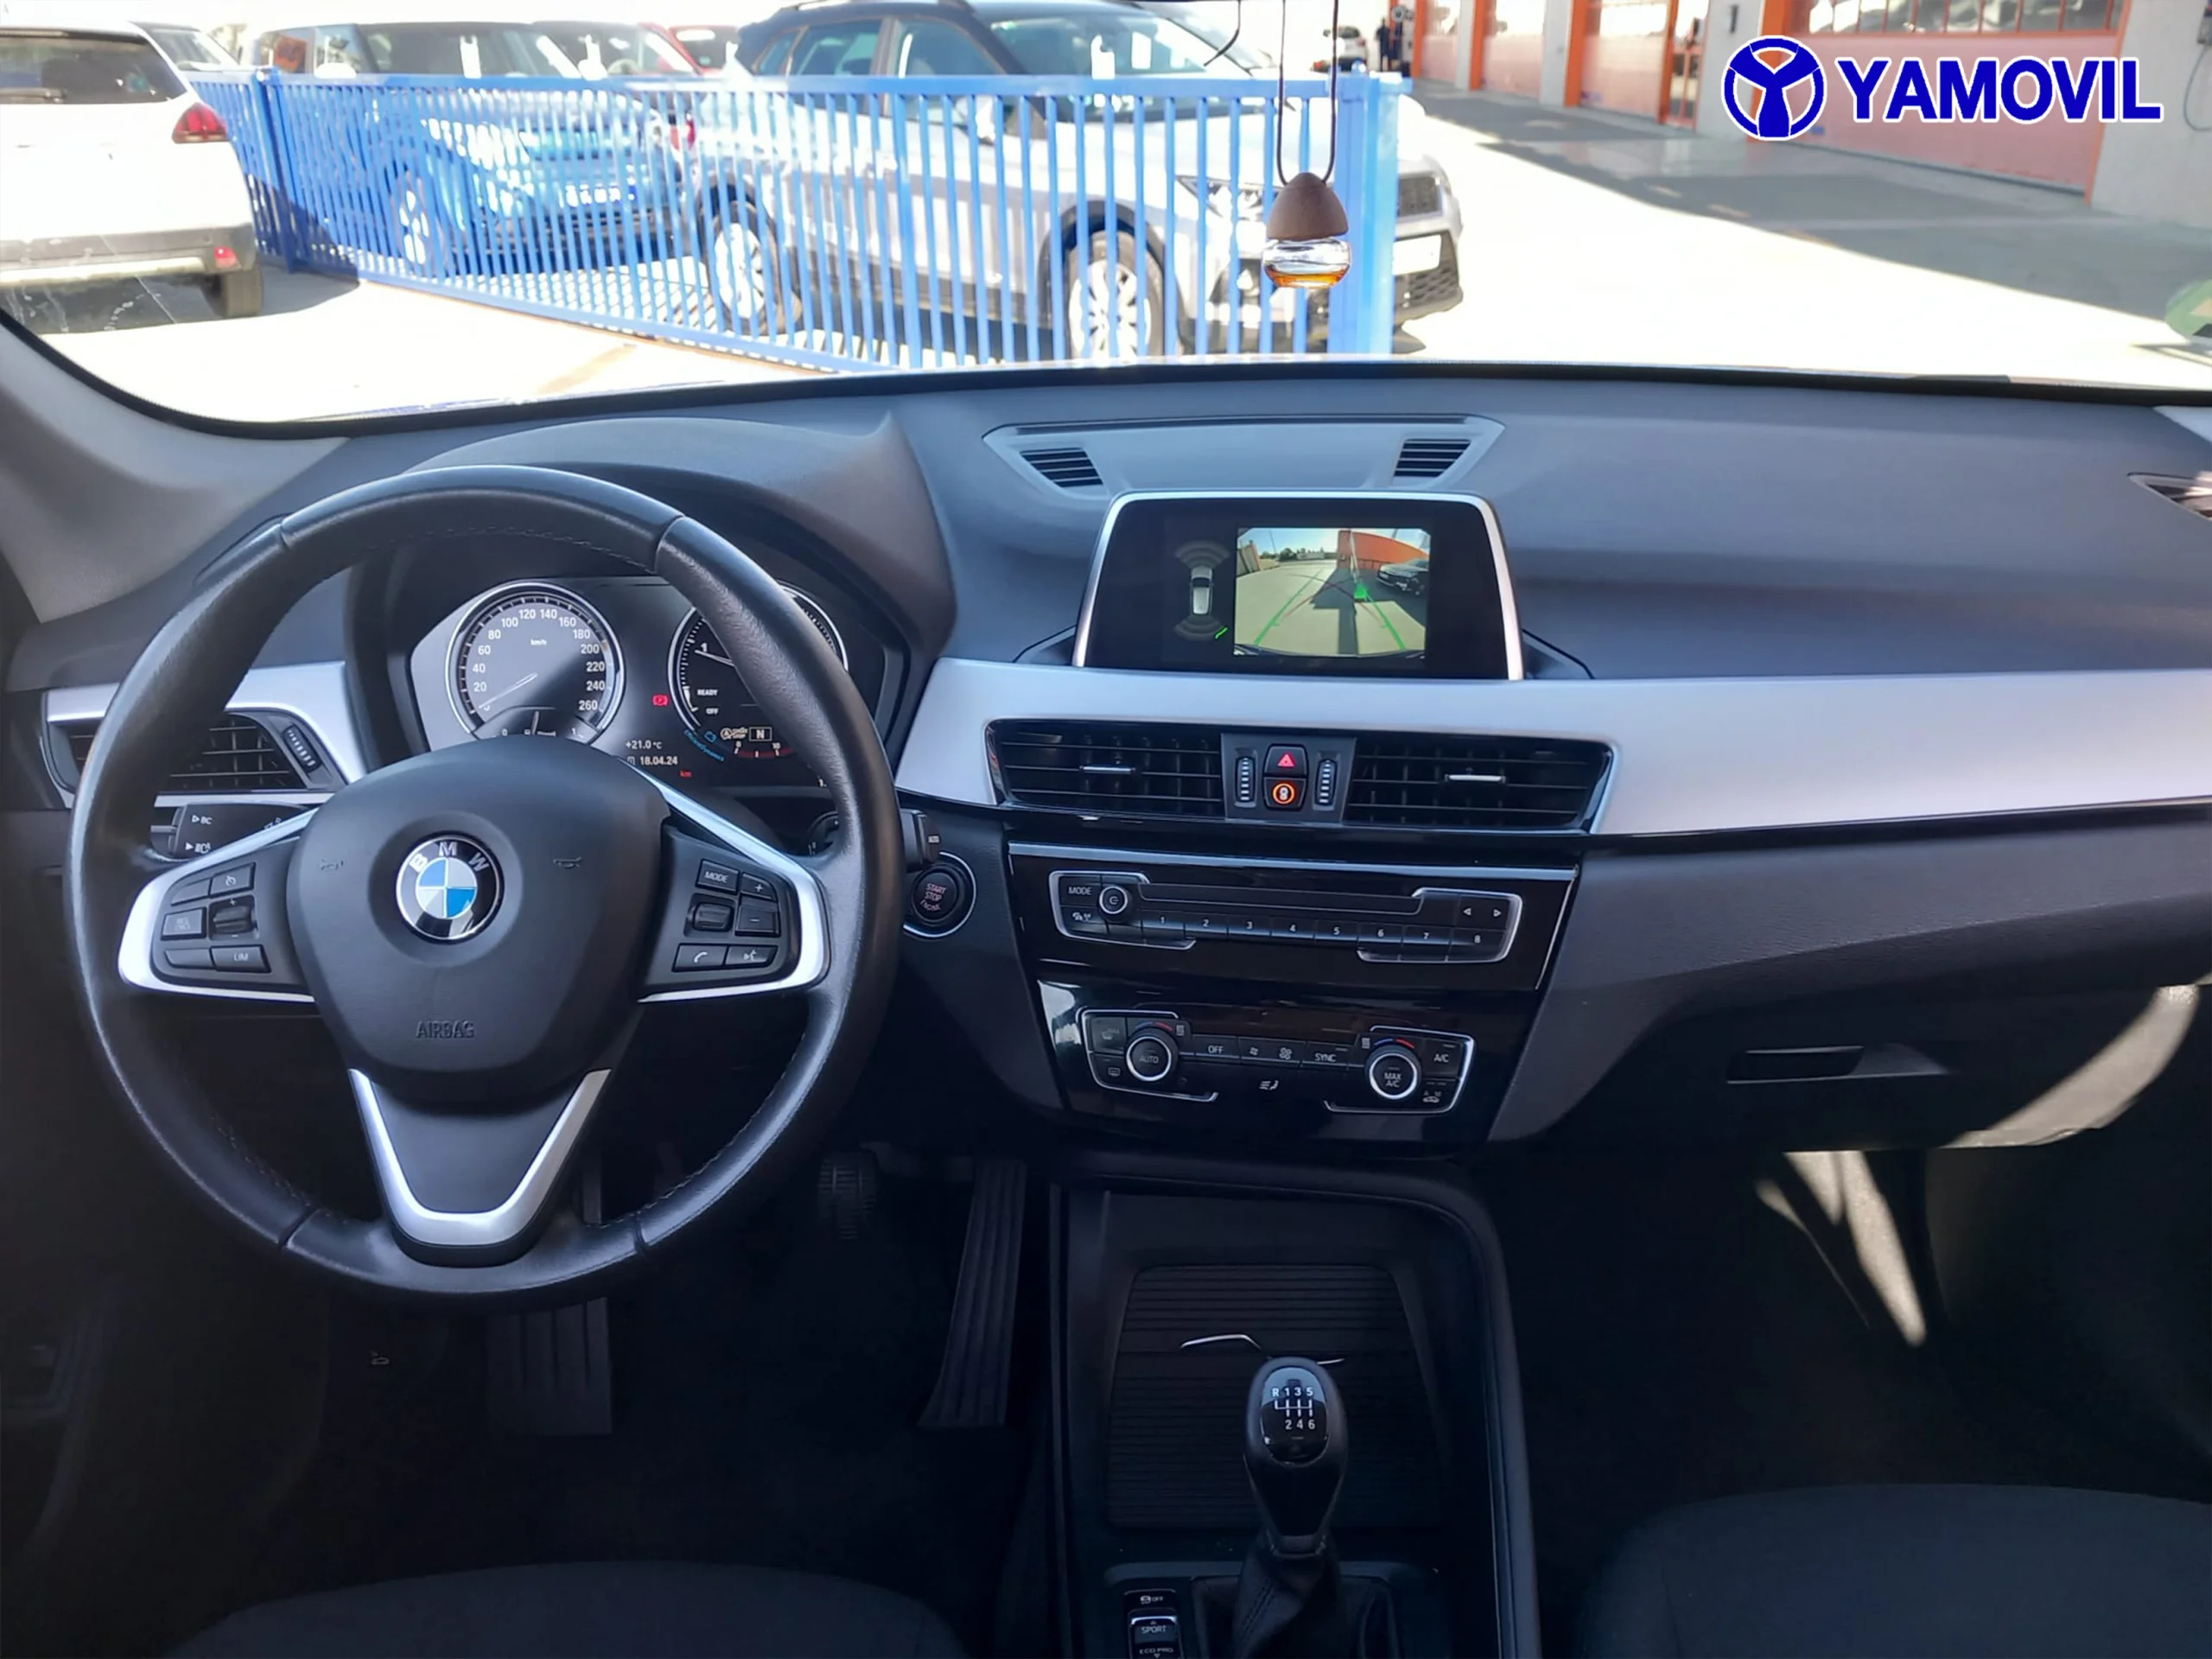 BMW X1 sDrive18d 110 kW (150 CV) - Foto 5